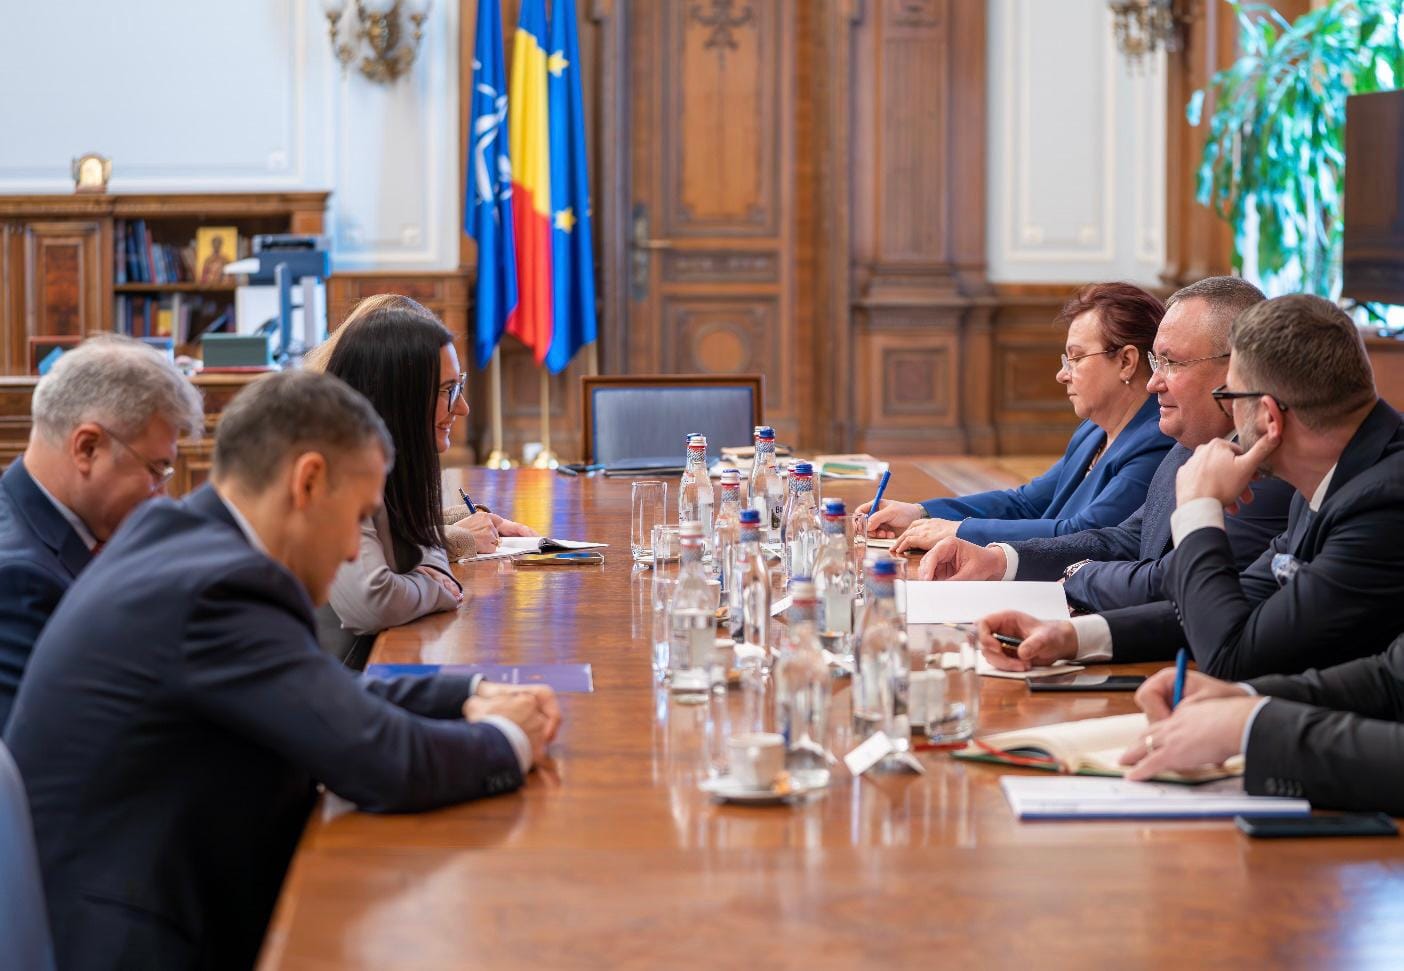 FOTO Viceprim-ministra Gherasimov, vizită oficială la București: s-a întâlnit cu ministra de Externe și președintele Senatului